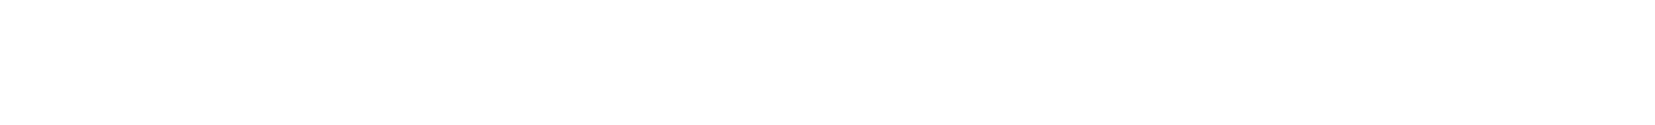 Williams-Sonoma logo grand pour les fonds sombres (PNG transparent)